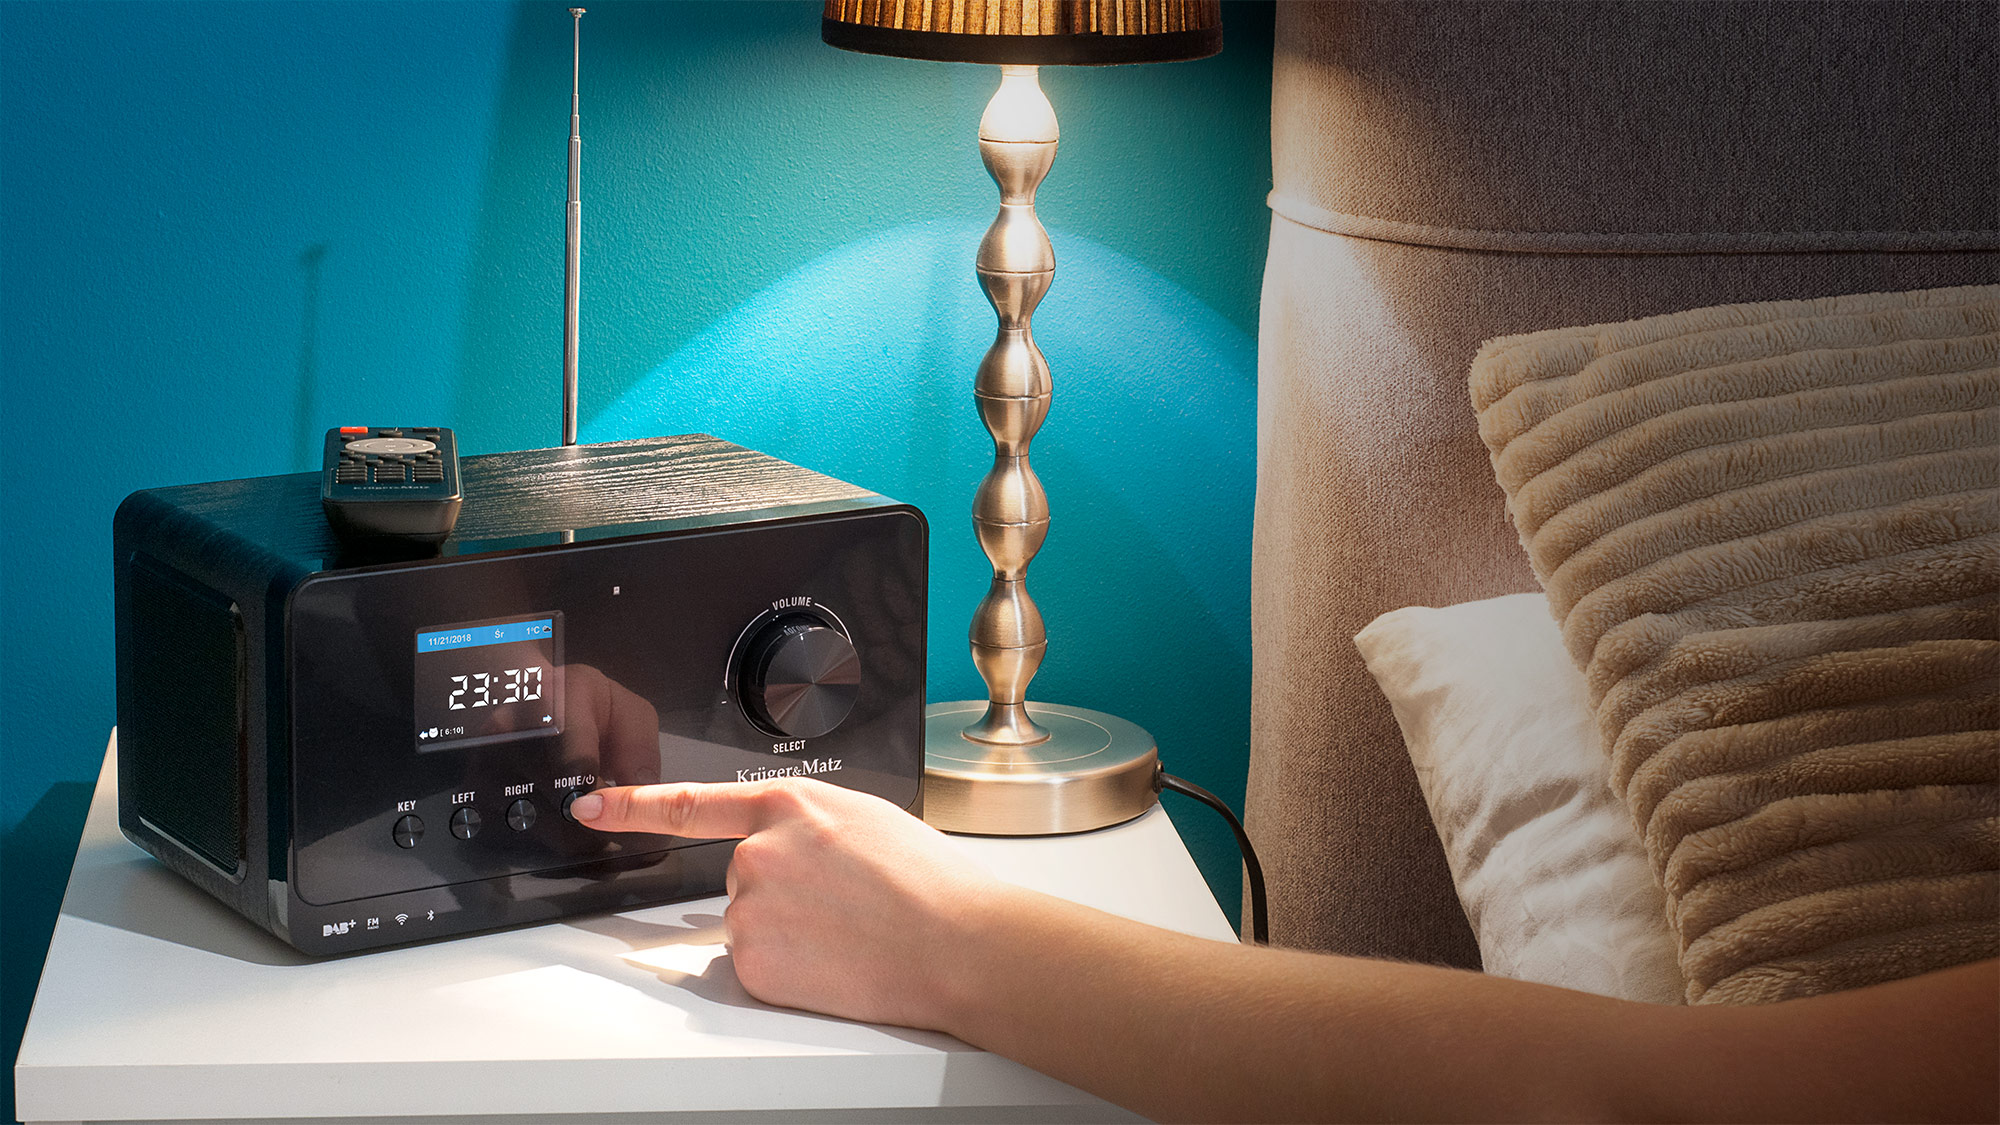 Radio-ul cu internet KM 816 de culoare neagra poate fi cadoul perfect atat pentru bucatarie, cat si pentru dormitor. Te poti trezi cu muzica franceza, jazz, rock'n'roll sau orice alt gen muzical de la postul tau radio preferat. 